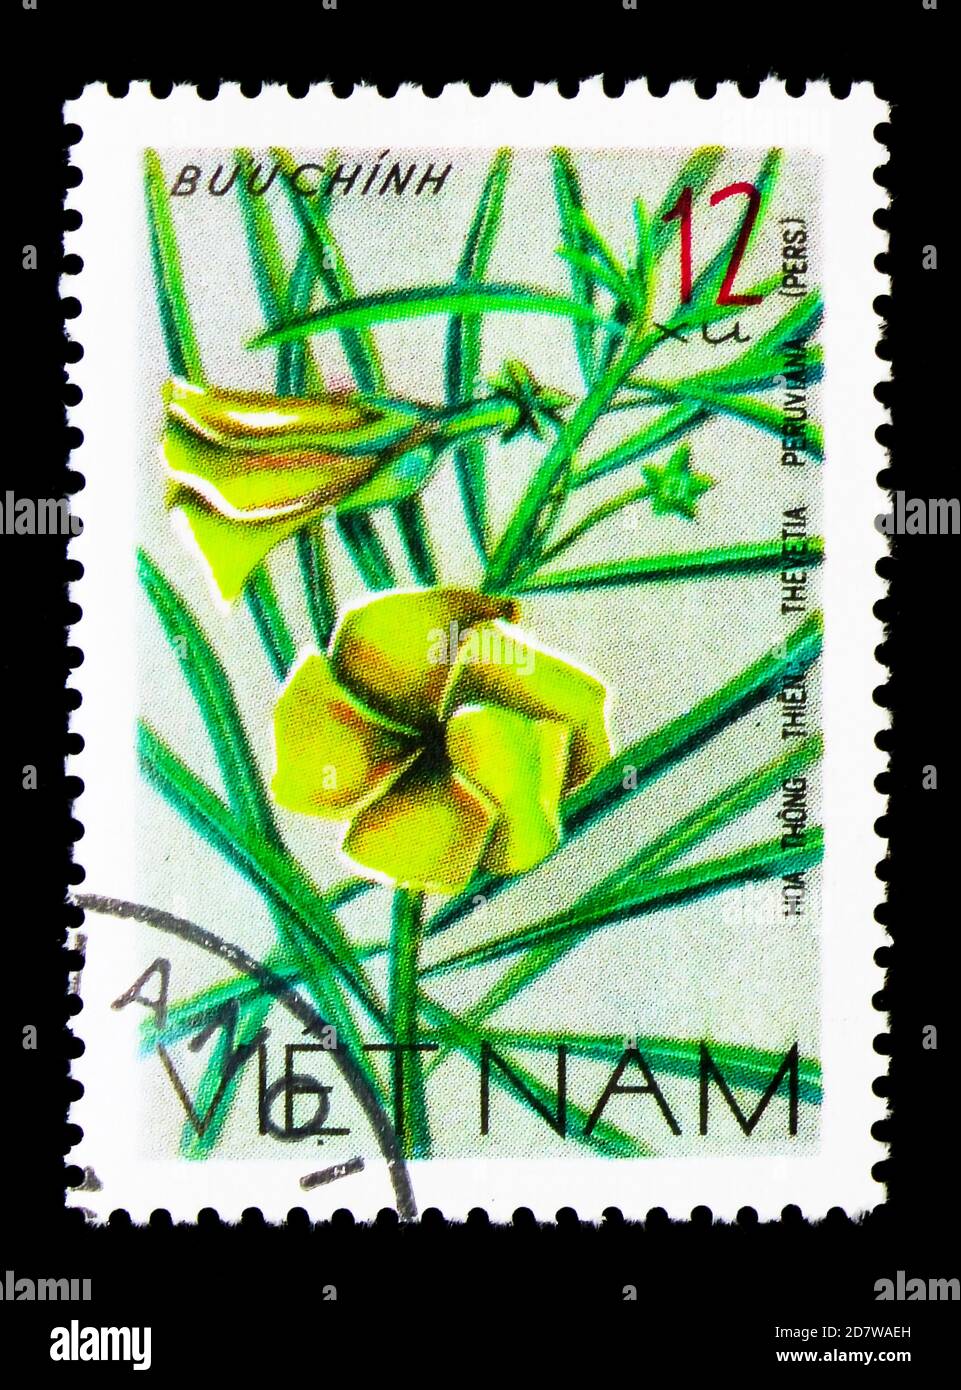 MOSKAU, RUSSLAND - 28. MÄRZ 2018: Eine in Vietnam gedruckte Marke zeigt Thevetia peruviana, Wildflowers Serie, um 1977 Stockfoto